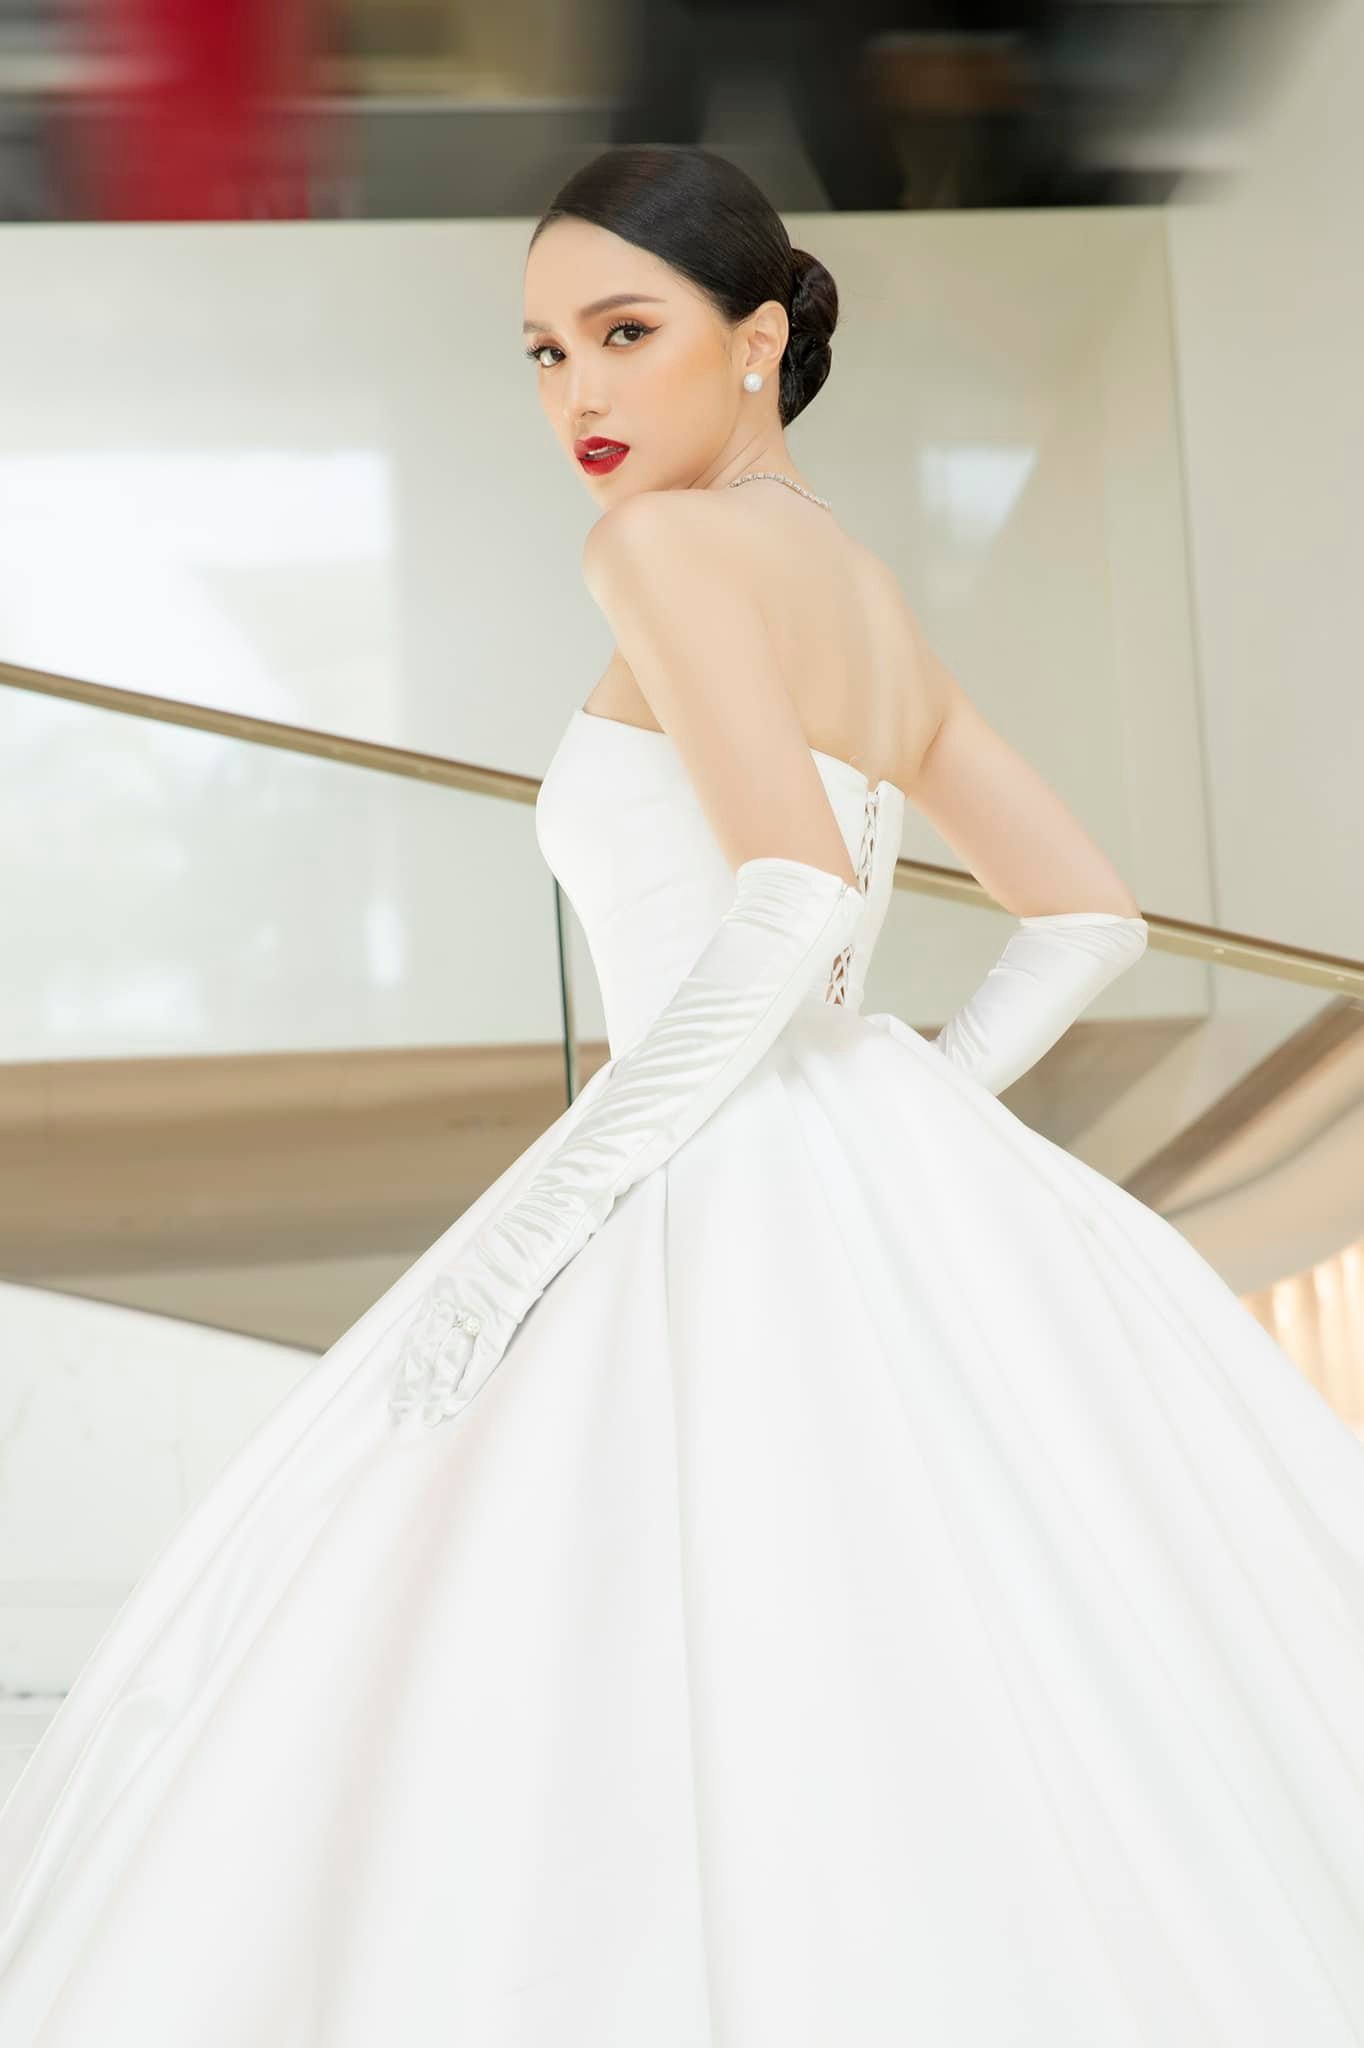 Hương Giang diện váy như cô dâu, bất ngờ xuất hiện trên thảm đỏ Cannes - Ảnh 6.